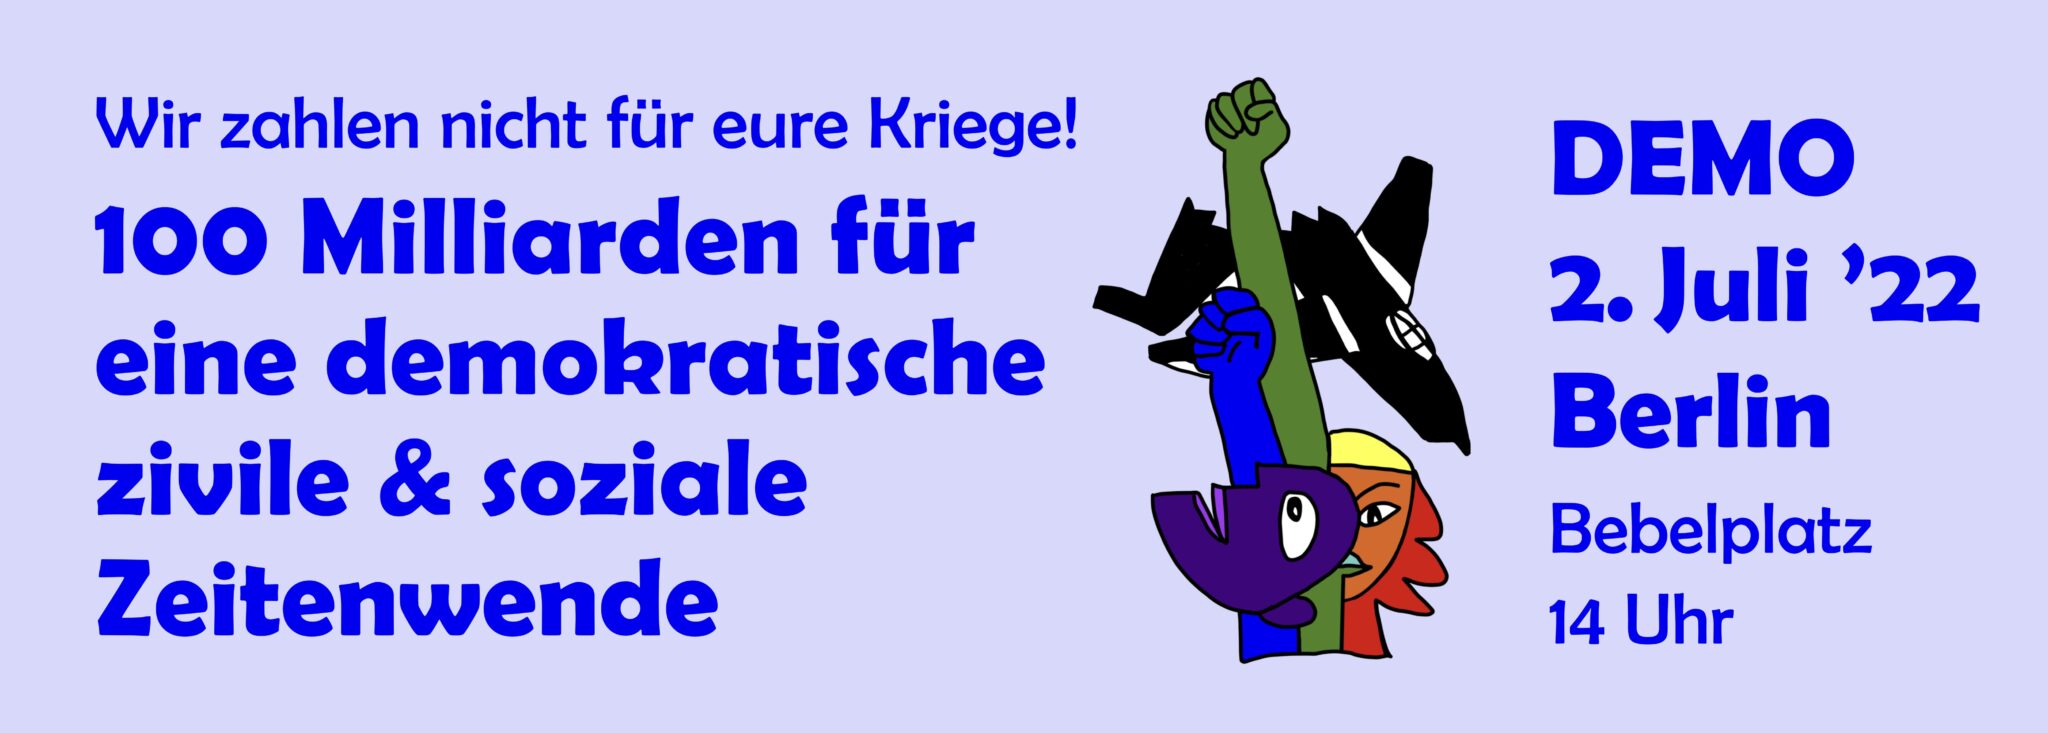 Logo mit Demo 2 2048x733 1 - Friedensdemo in Berlin - UZ vom 24. Juni 2022 - UZ vom 24. Juni 2022